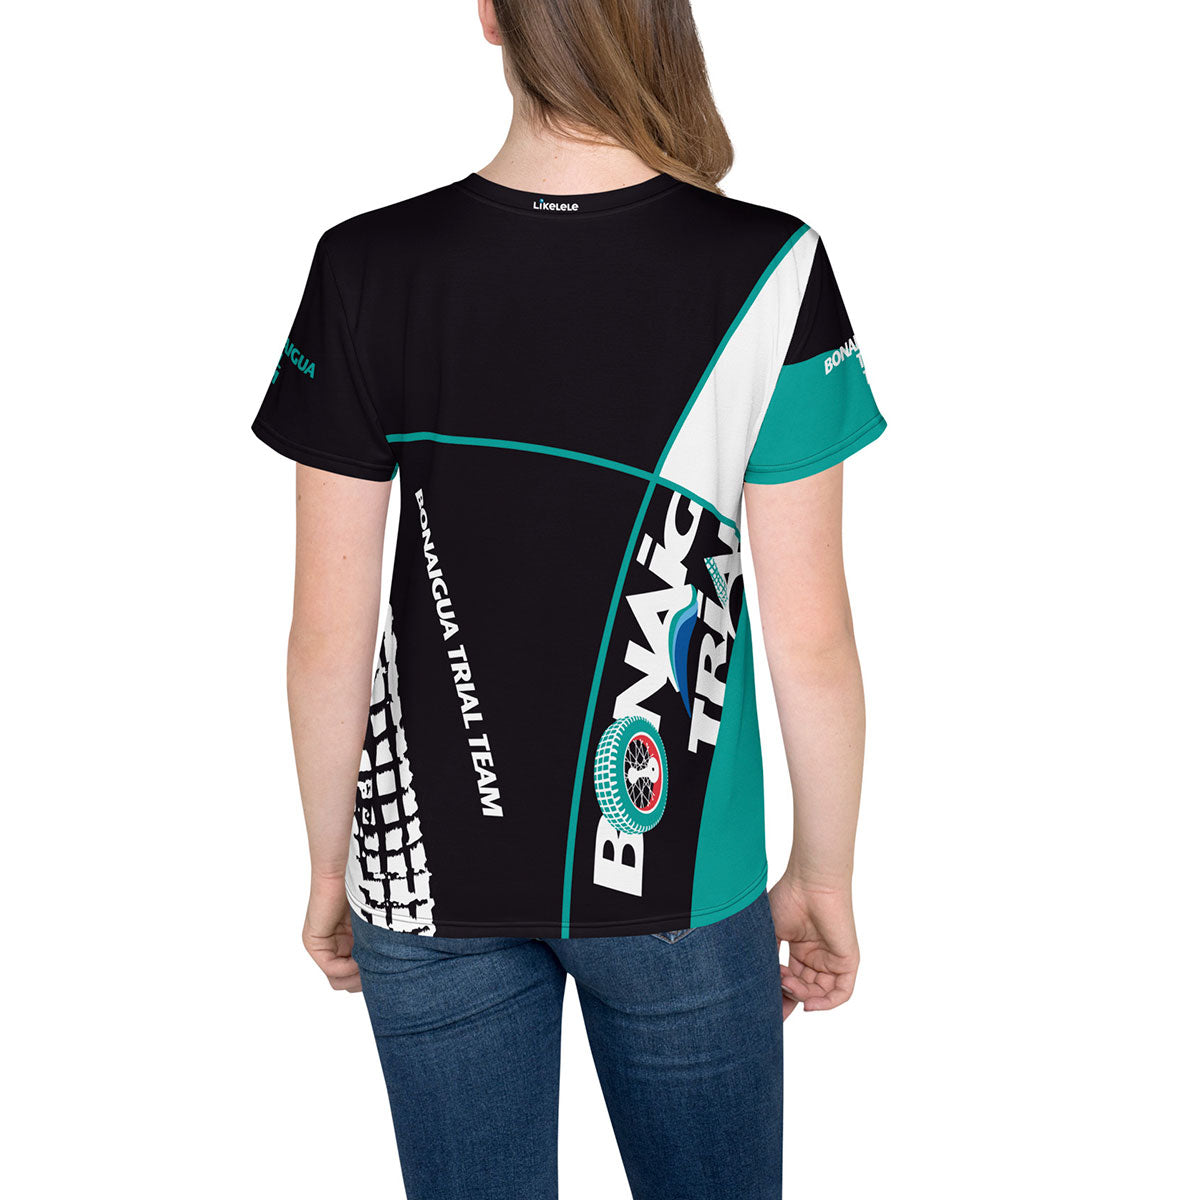 BONAIGUA TRIAL · Camiseta m/corta·Adolescente/Unisex · Premium·Full Print-250x5ipi